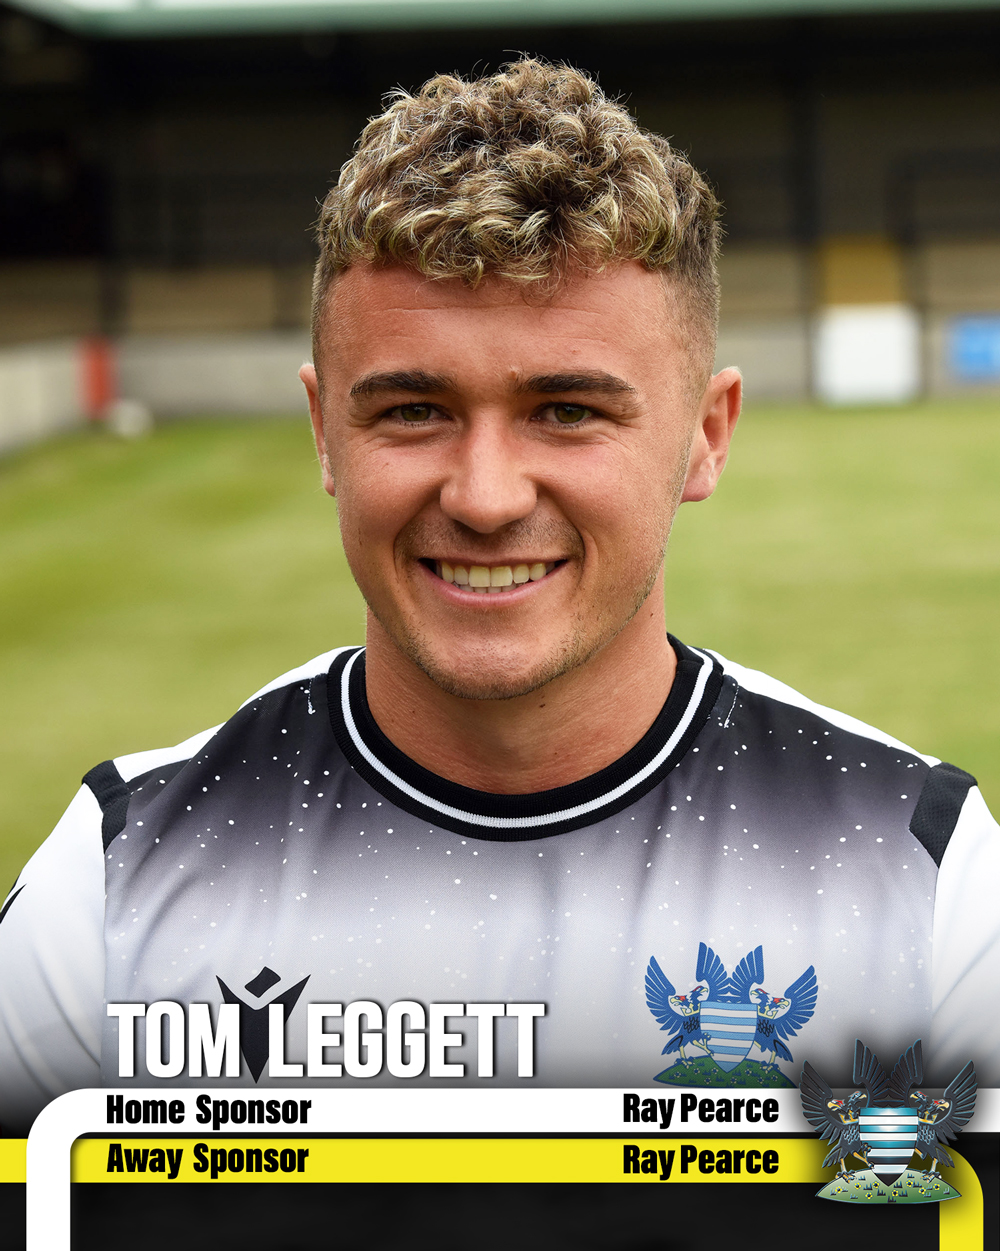 Tom Leggett